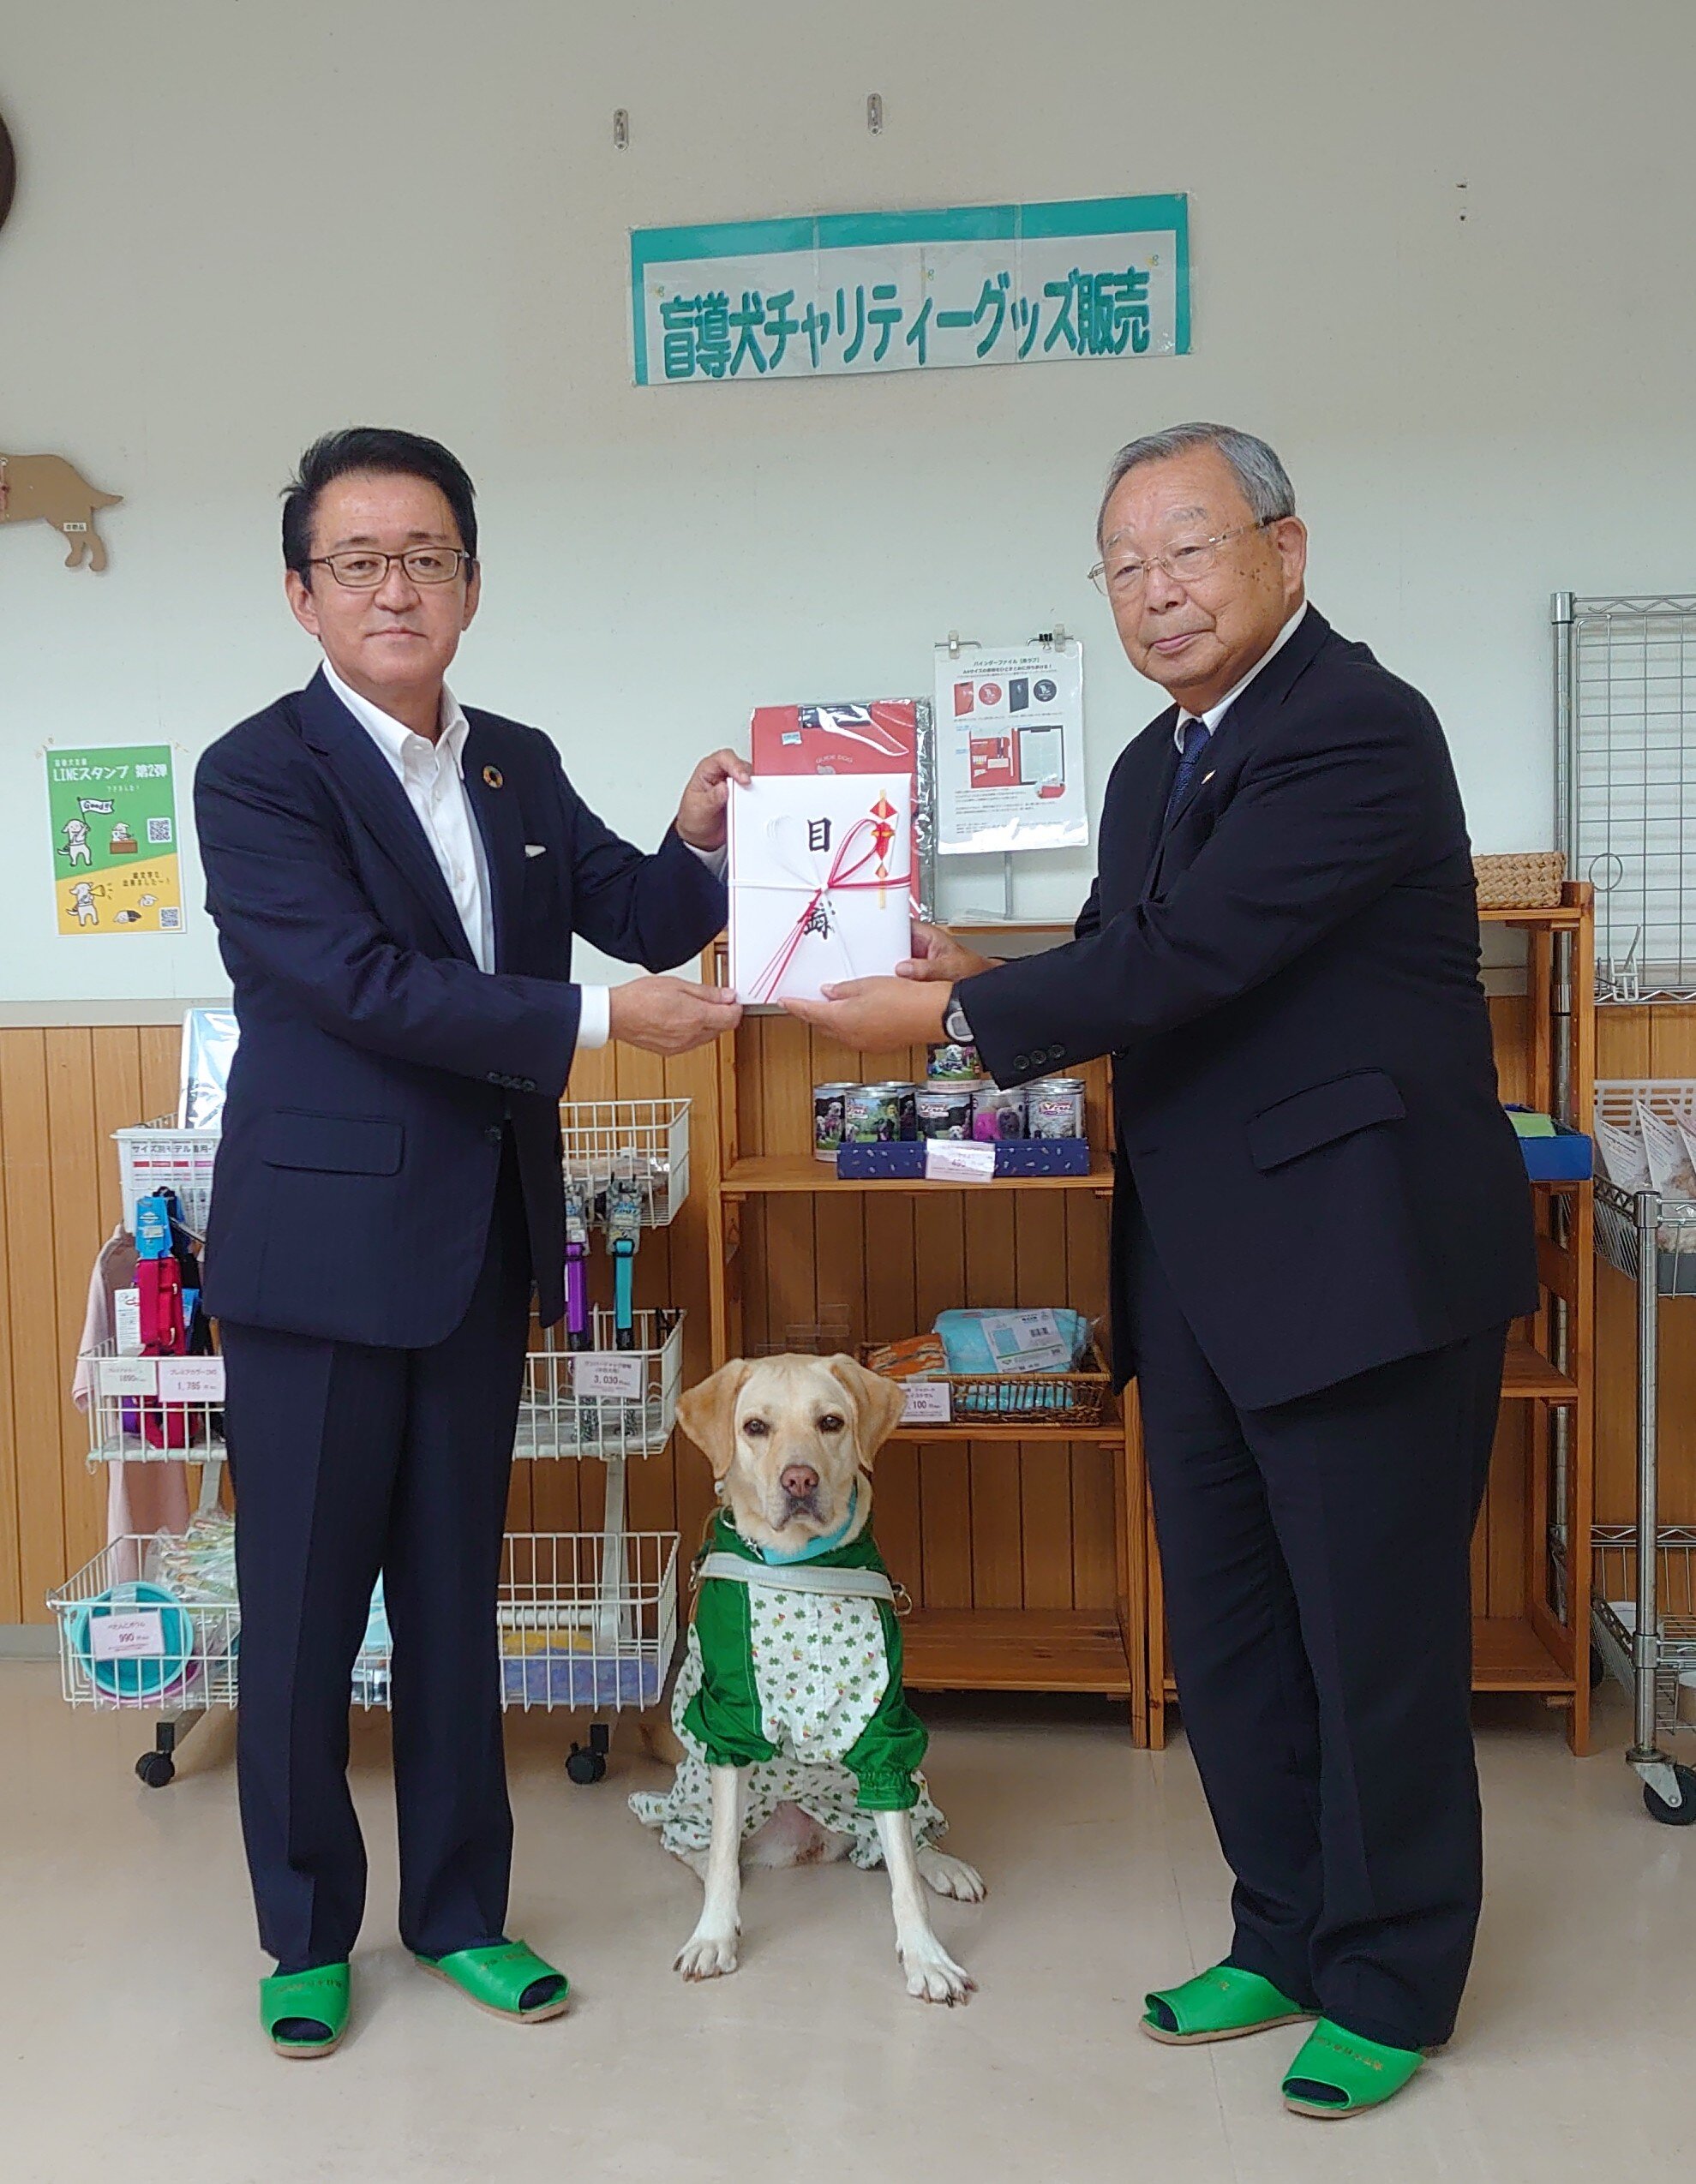 とちぎコープ塚原理事長（左）より東日本盲導犬協会 眞尾理事長に目録を進呈しました。ピーアール犬あかりさんと一緒に。